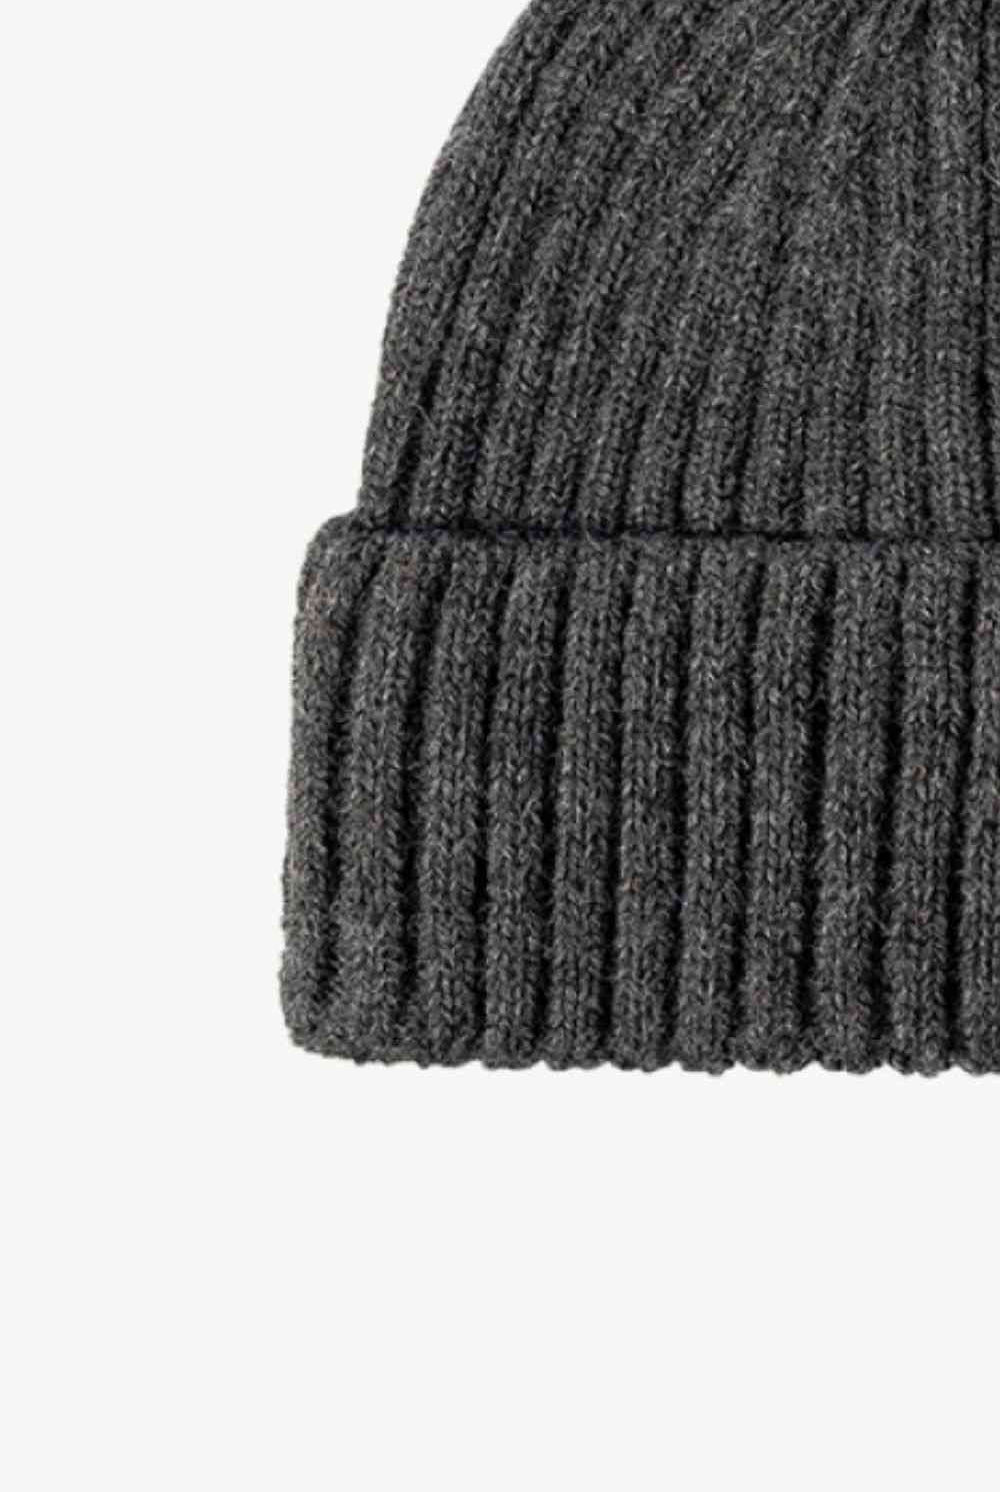 Dark Slate Gray Rib-Knit Cuff Beanie Winter Accessories